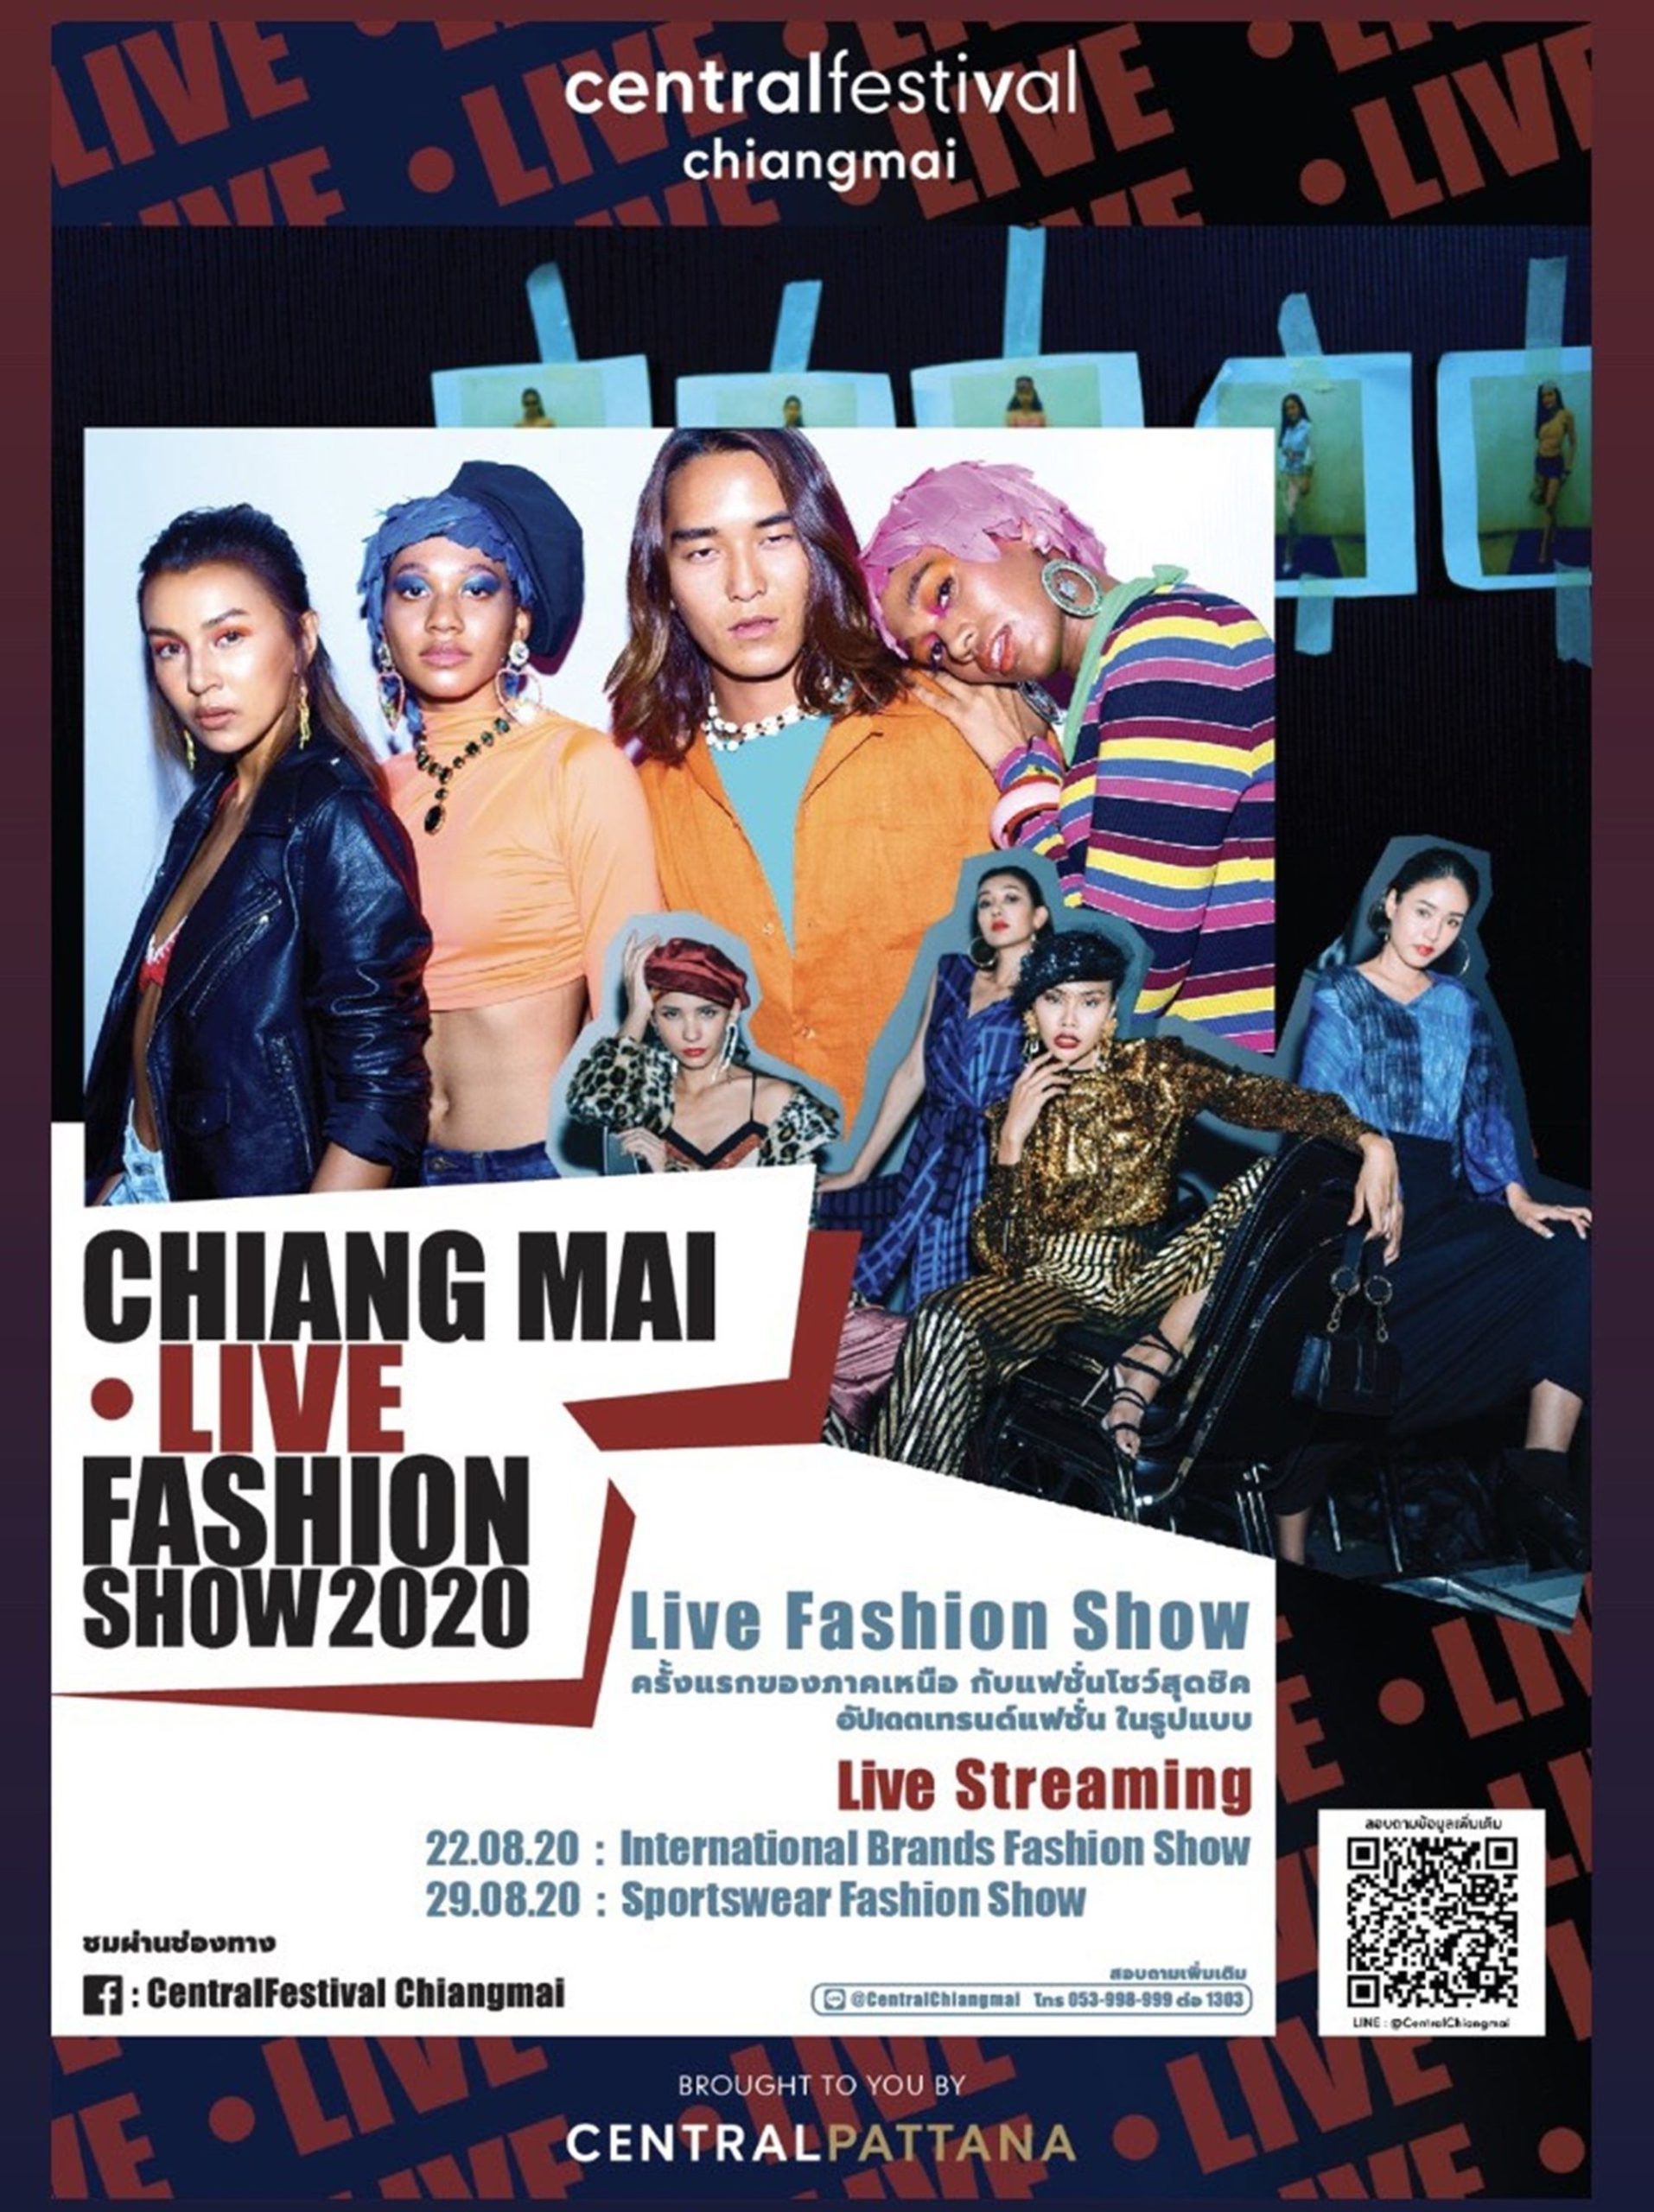 "เซ็นทรัลเฟสติวัล เชียงใหม่" เปิดรันเวย์แบบ New normal จัด ‘Chiangmai Live Fashion Show 2020’ ครั้งแรกของภาคเหนือกับแฟชั่นโชว์ในรูปแบบ Live Streaming